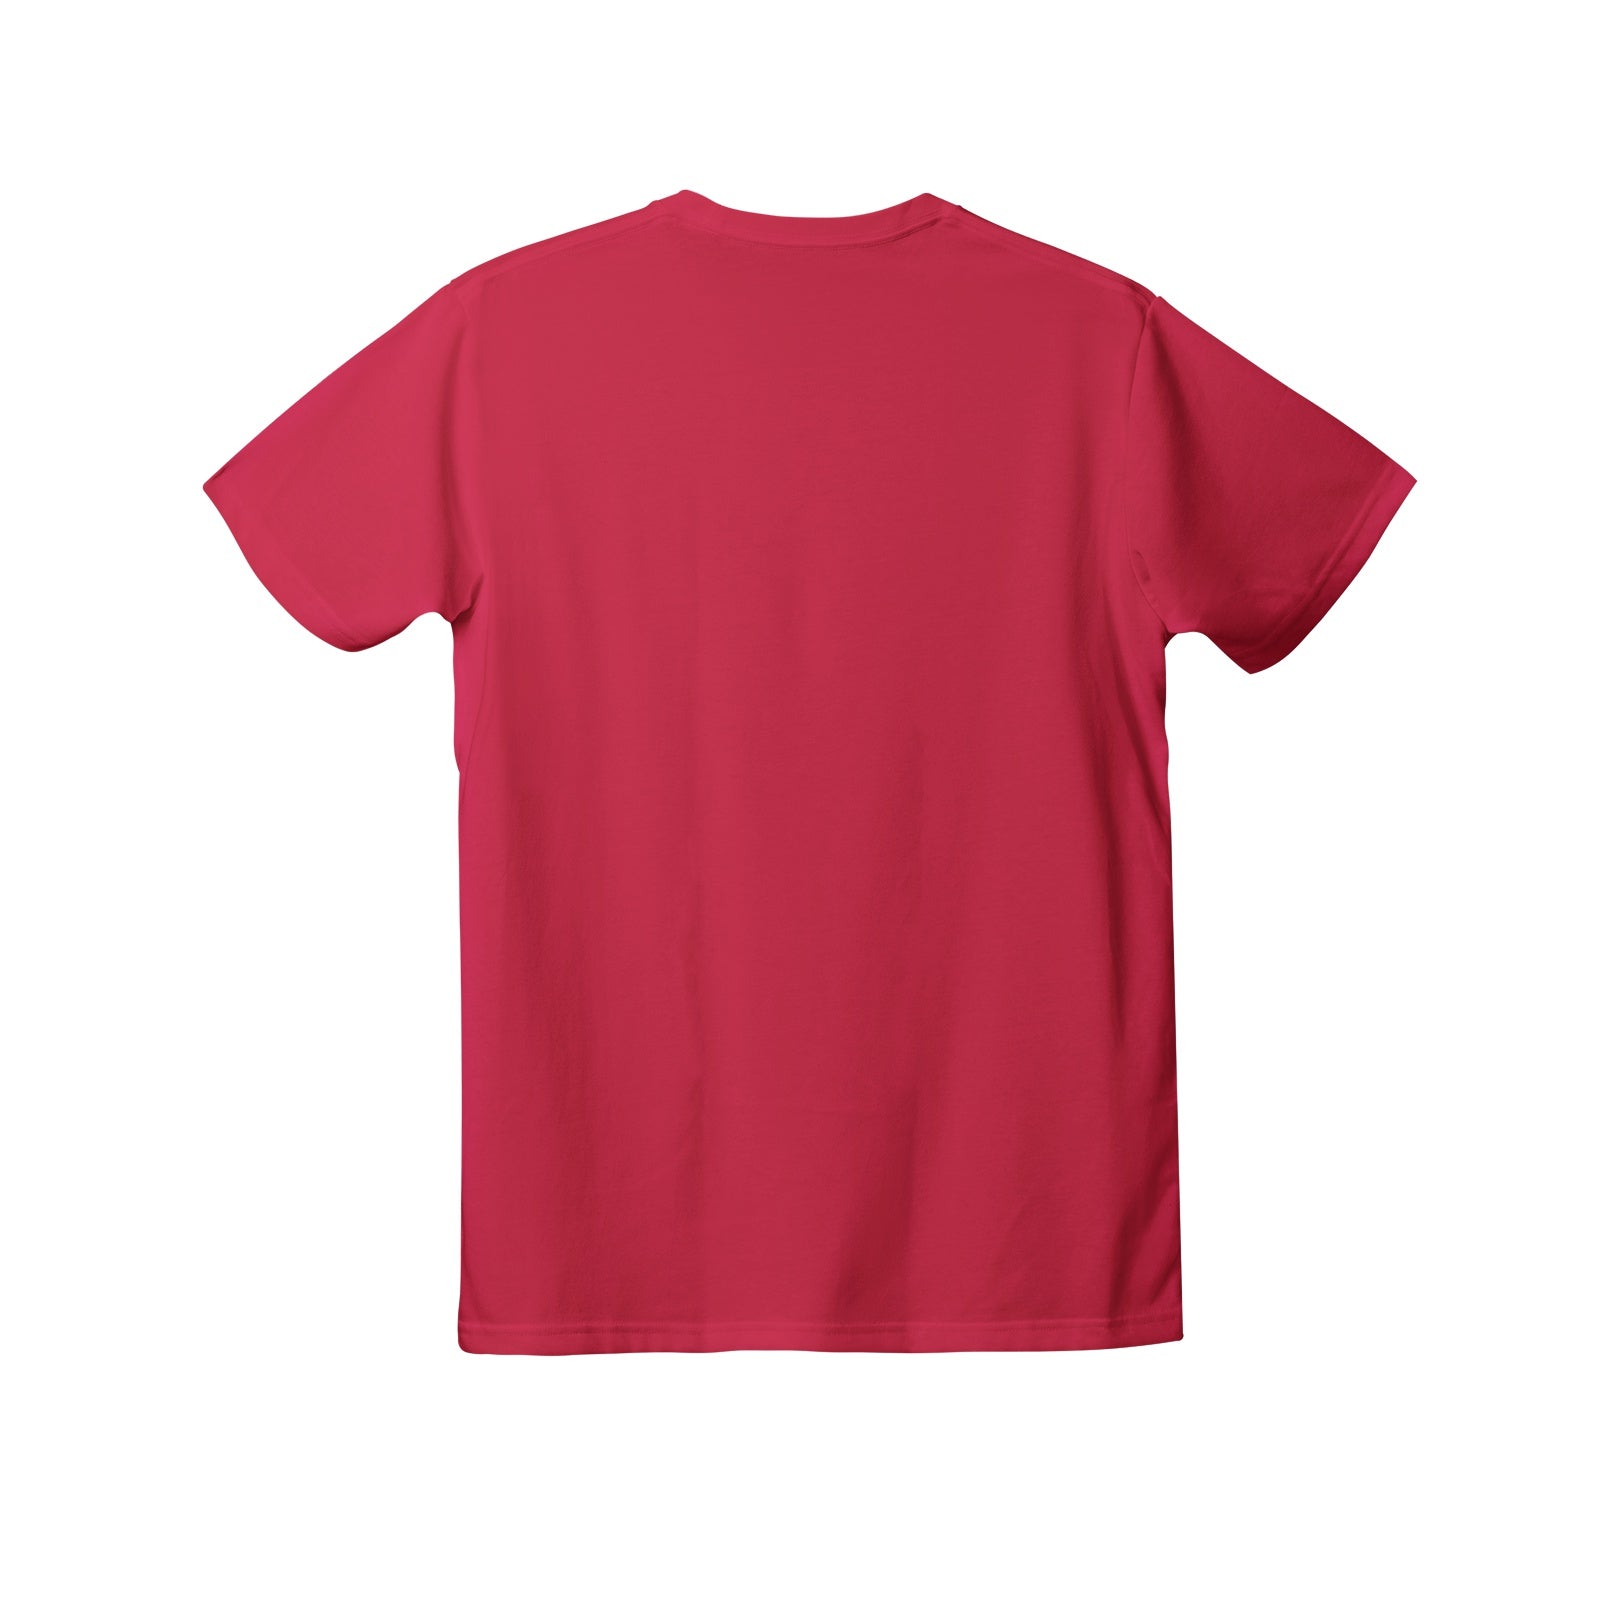 Not Today Lazy Cat Women's Premium Cotton T-Shirt - DromedarShop.com Online Boutique